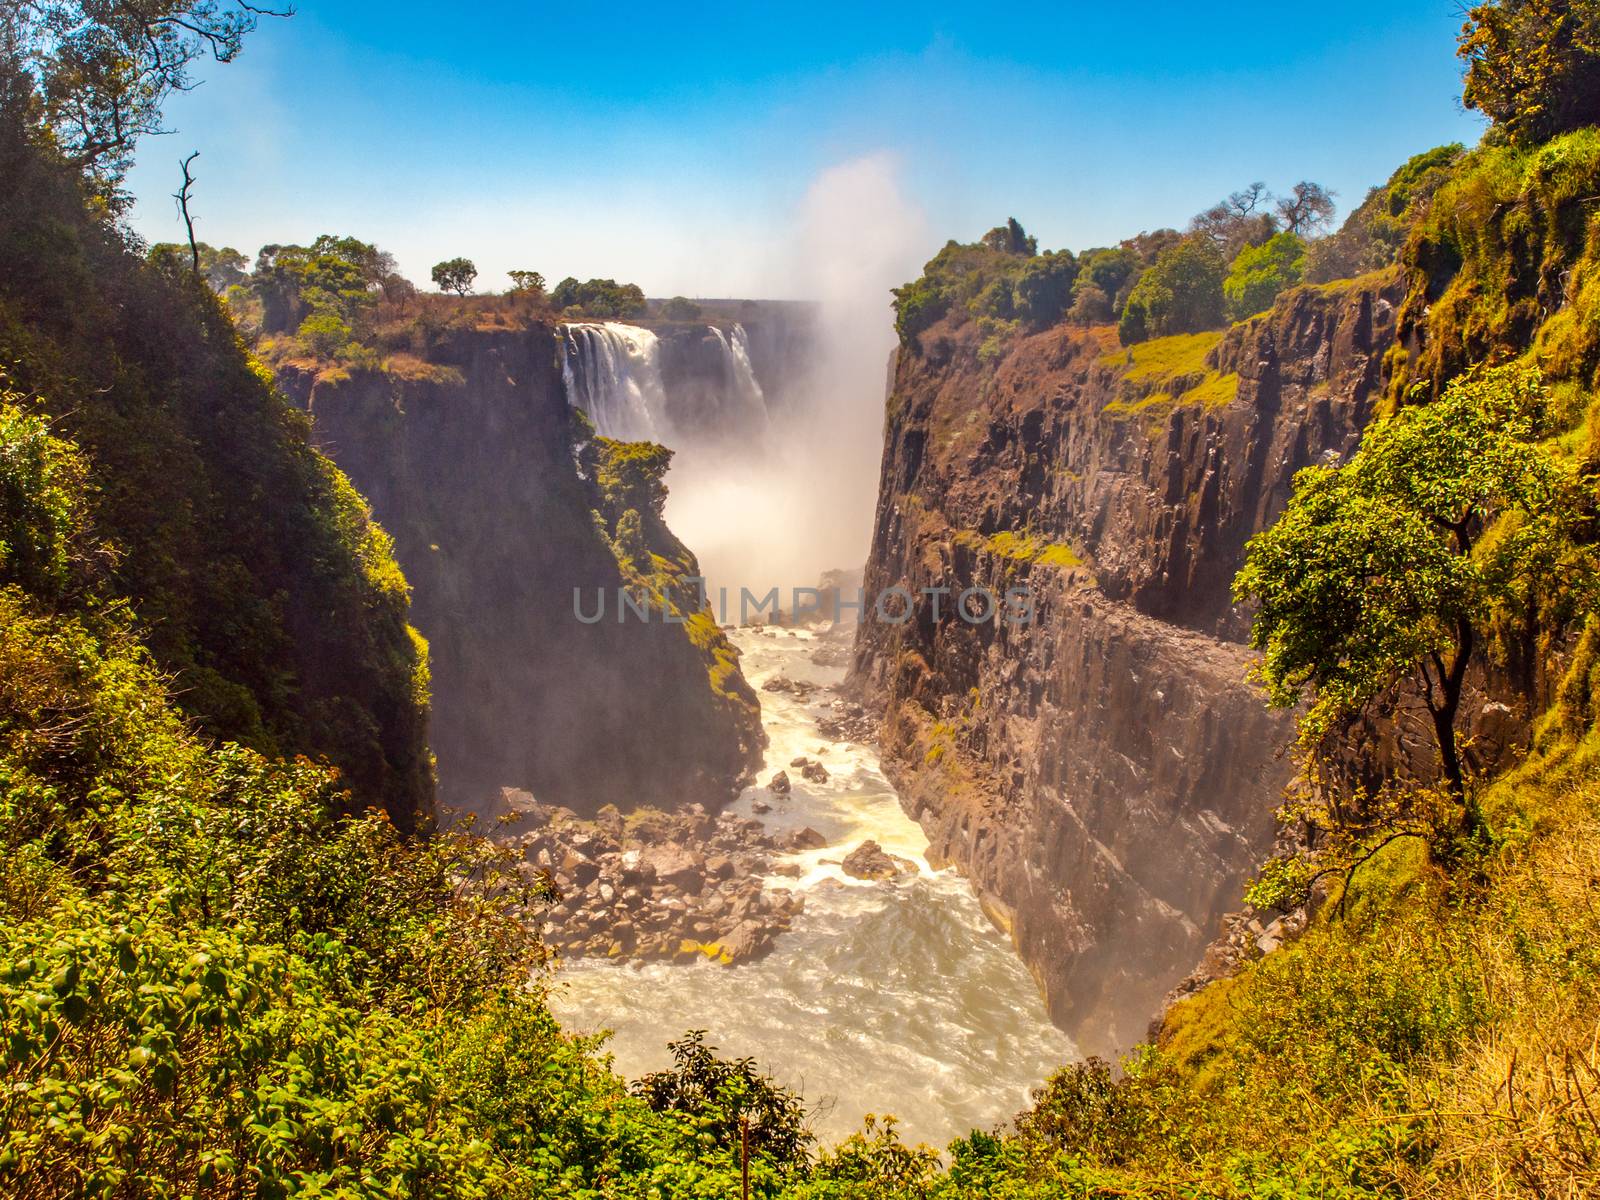 Victoria Falls on Zambezi River. Dry season. Border between Zimbabwe and Zambia, Africa.